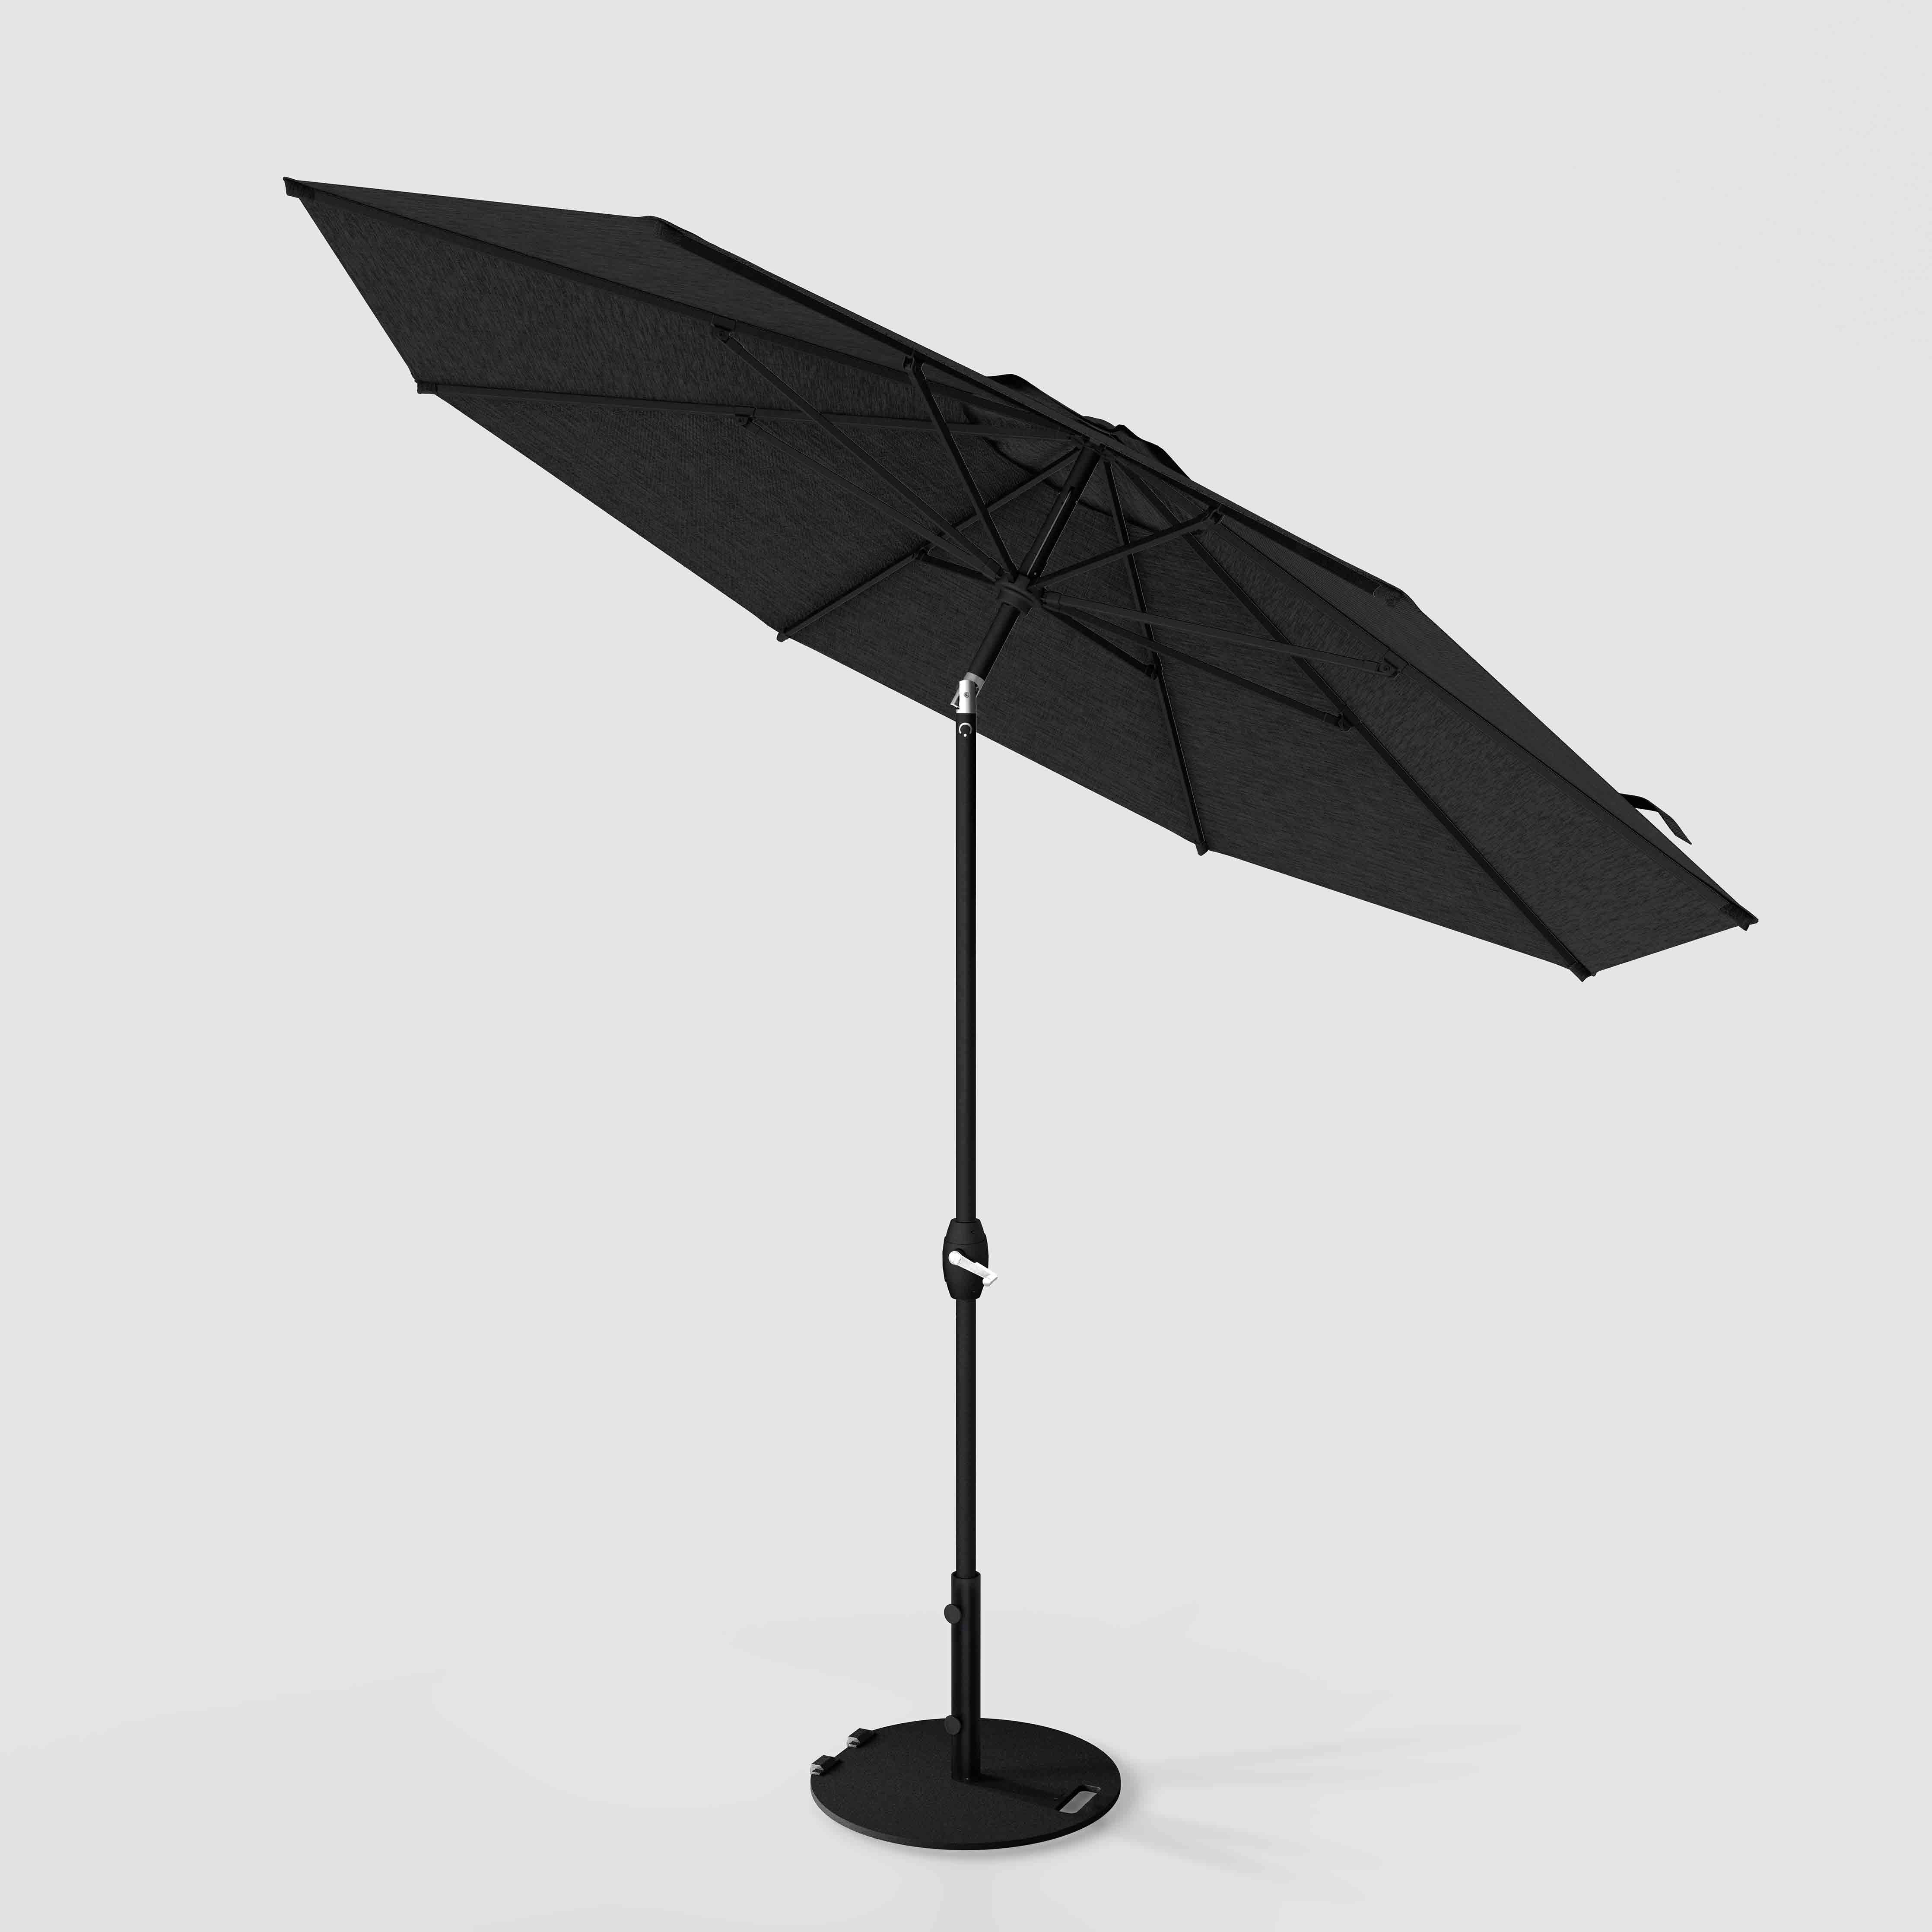 The Lean™ - Sunbrella Spectrum Carbono